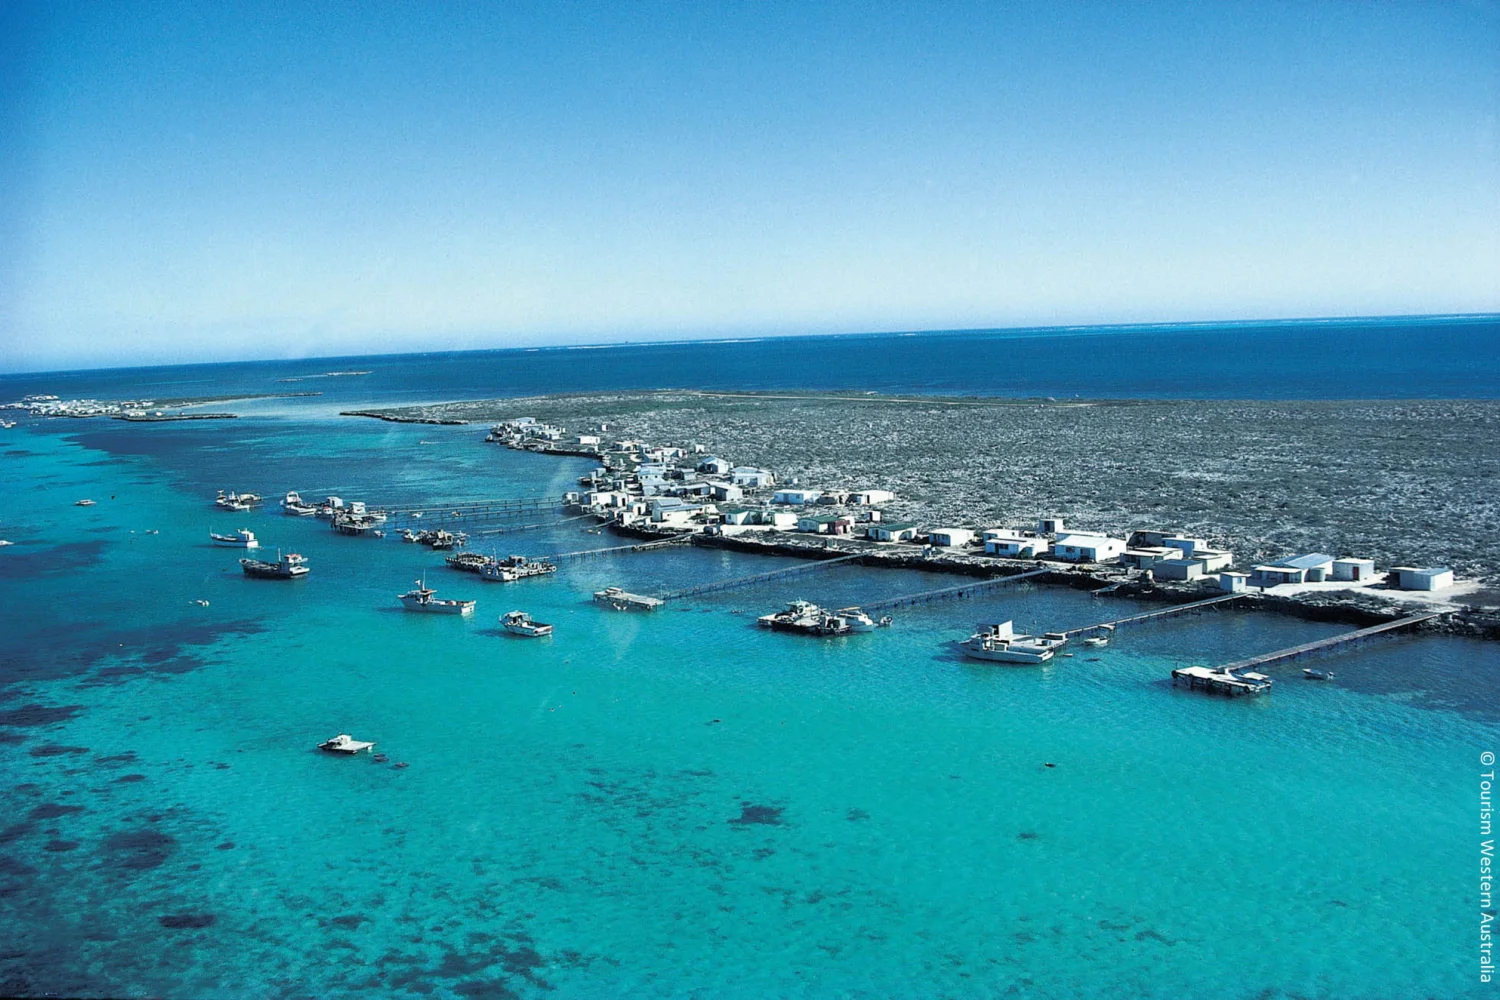 Aerial view of fishing shacks Abrolhols Islands